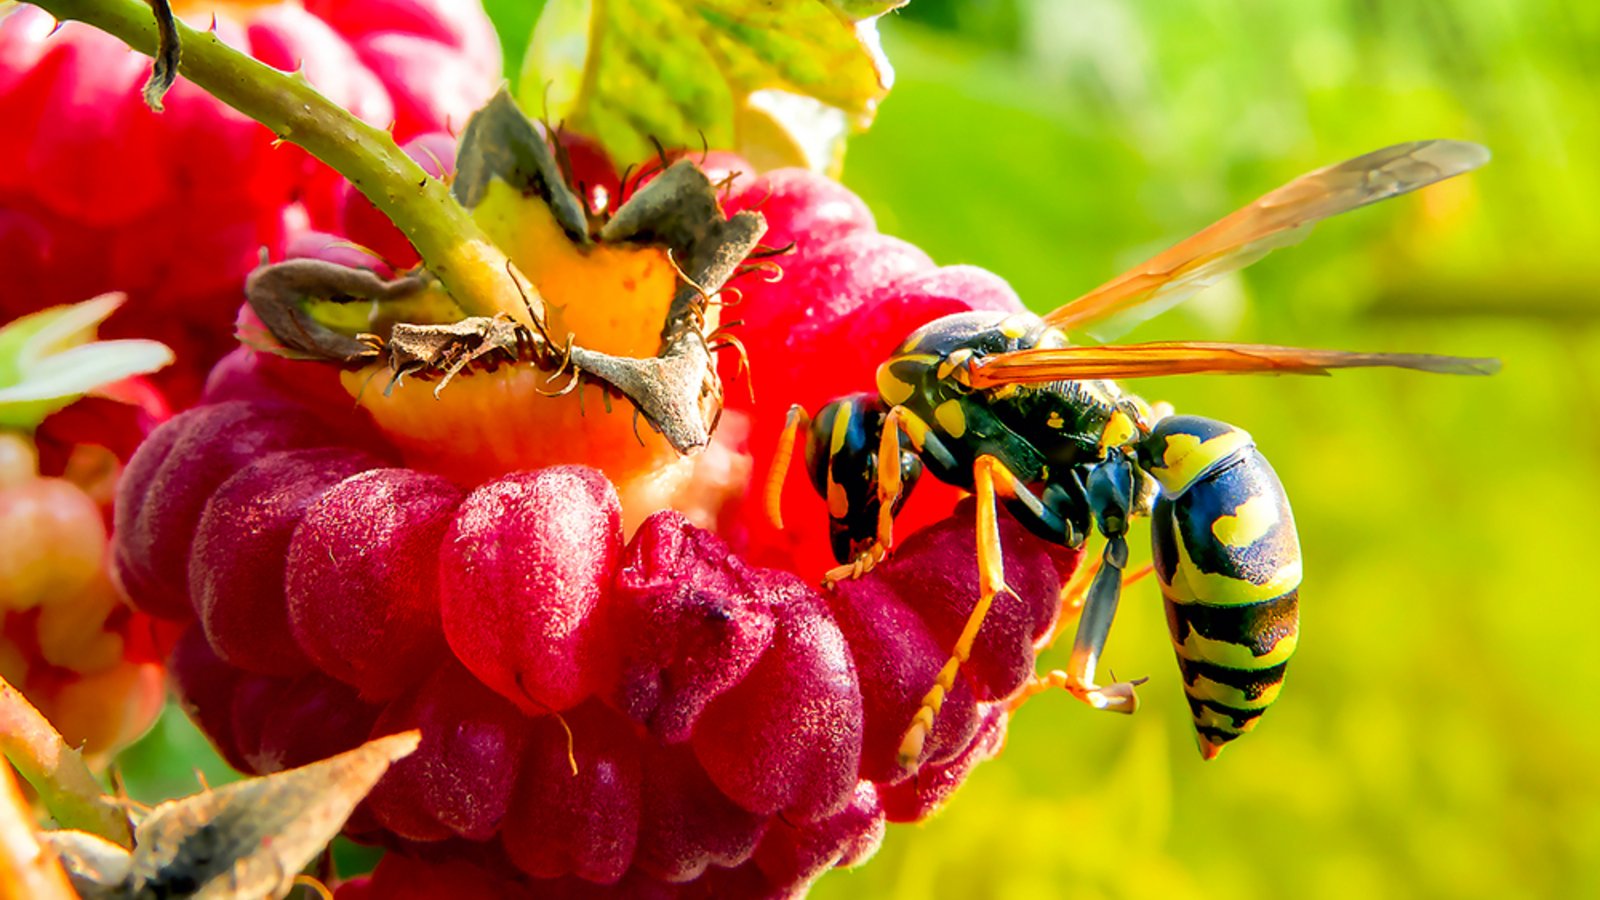 Wespenstiche sind schmerzhaft und können unangenehm jucken.Foto: Andrey Bocharov / shutterstock.com